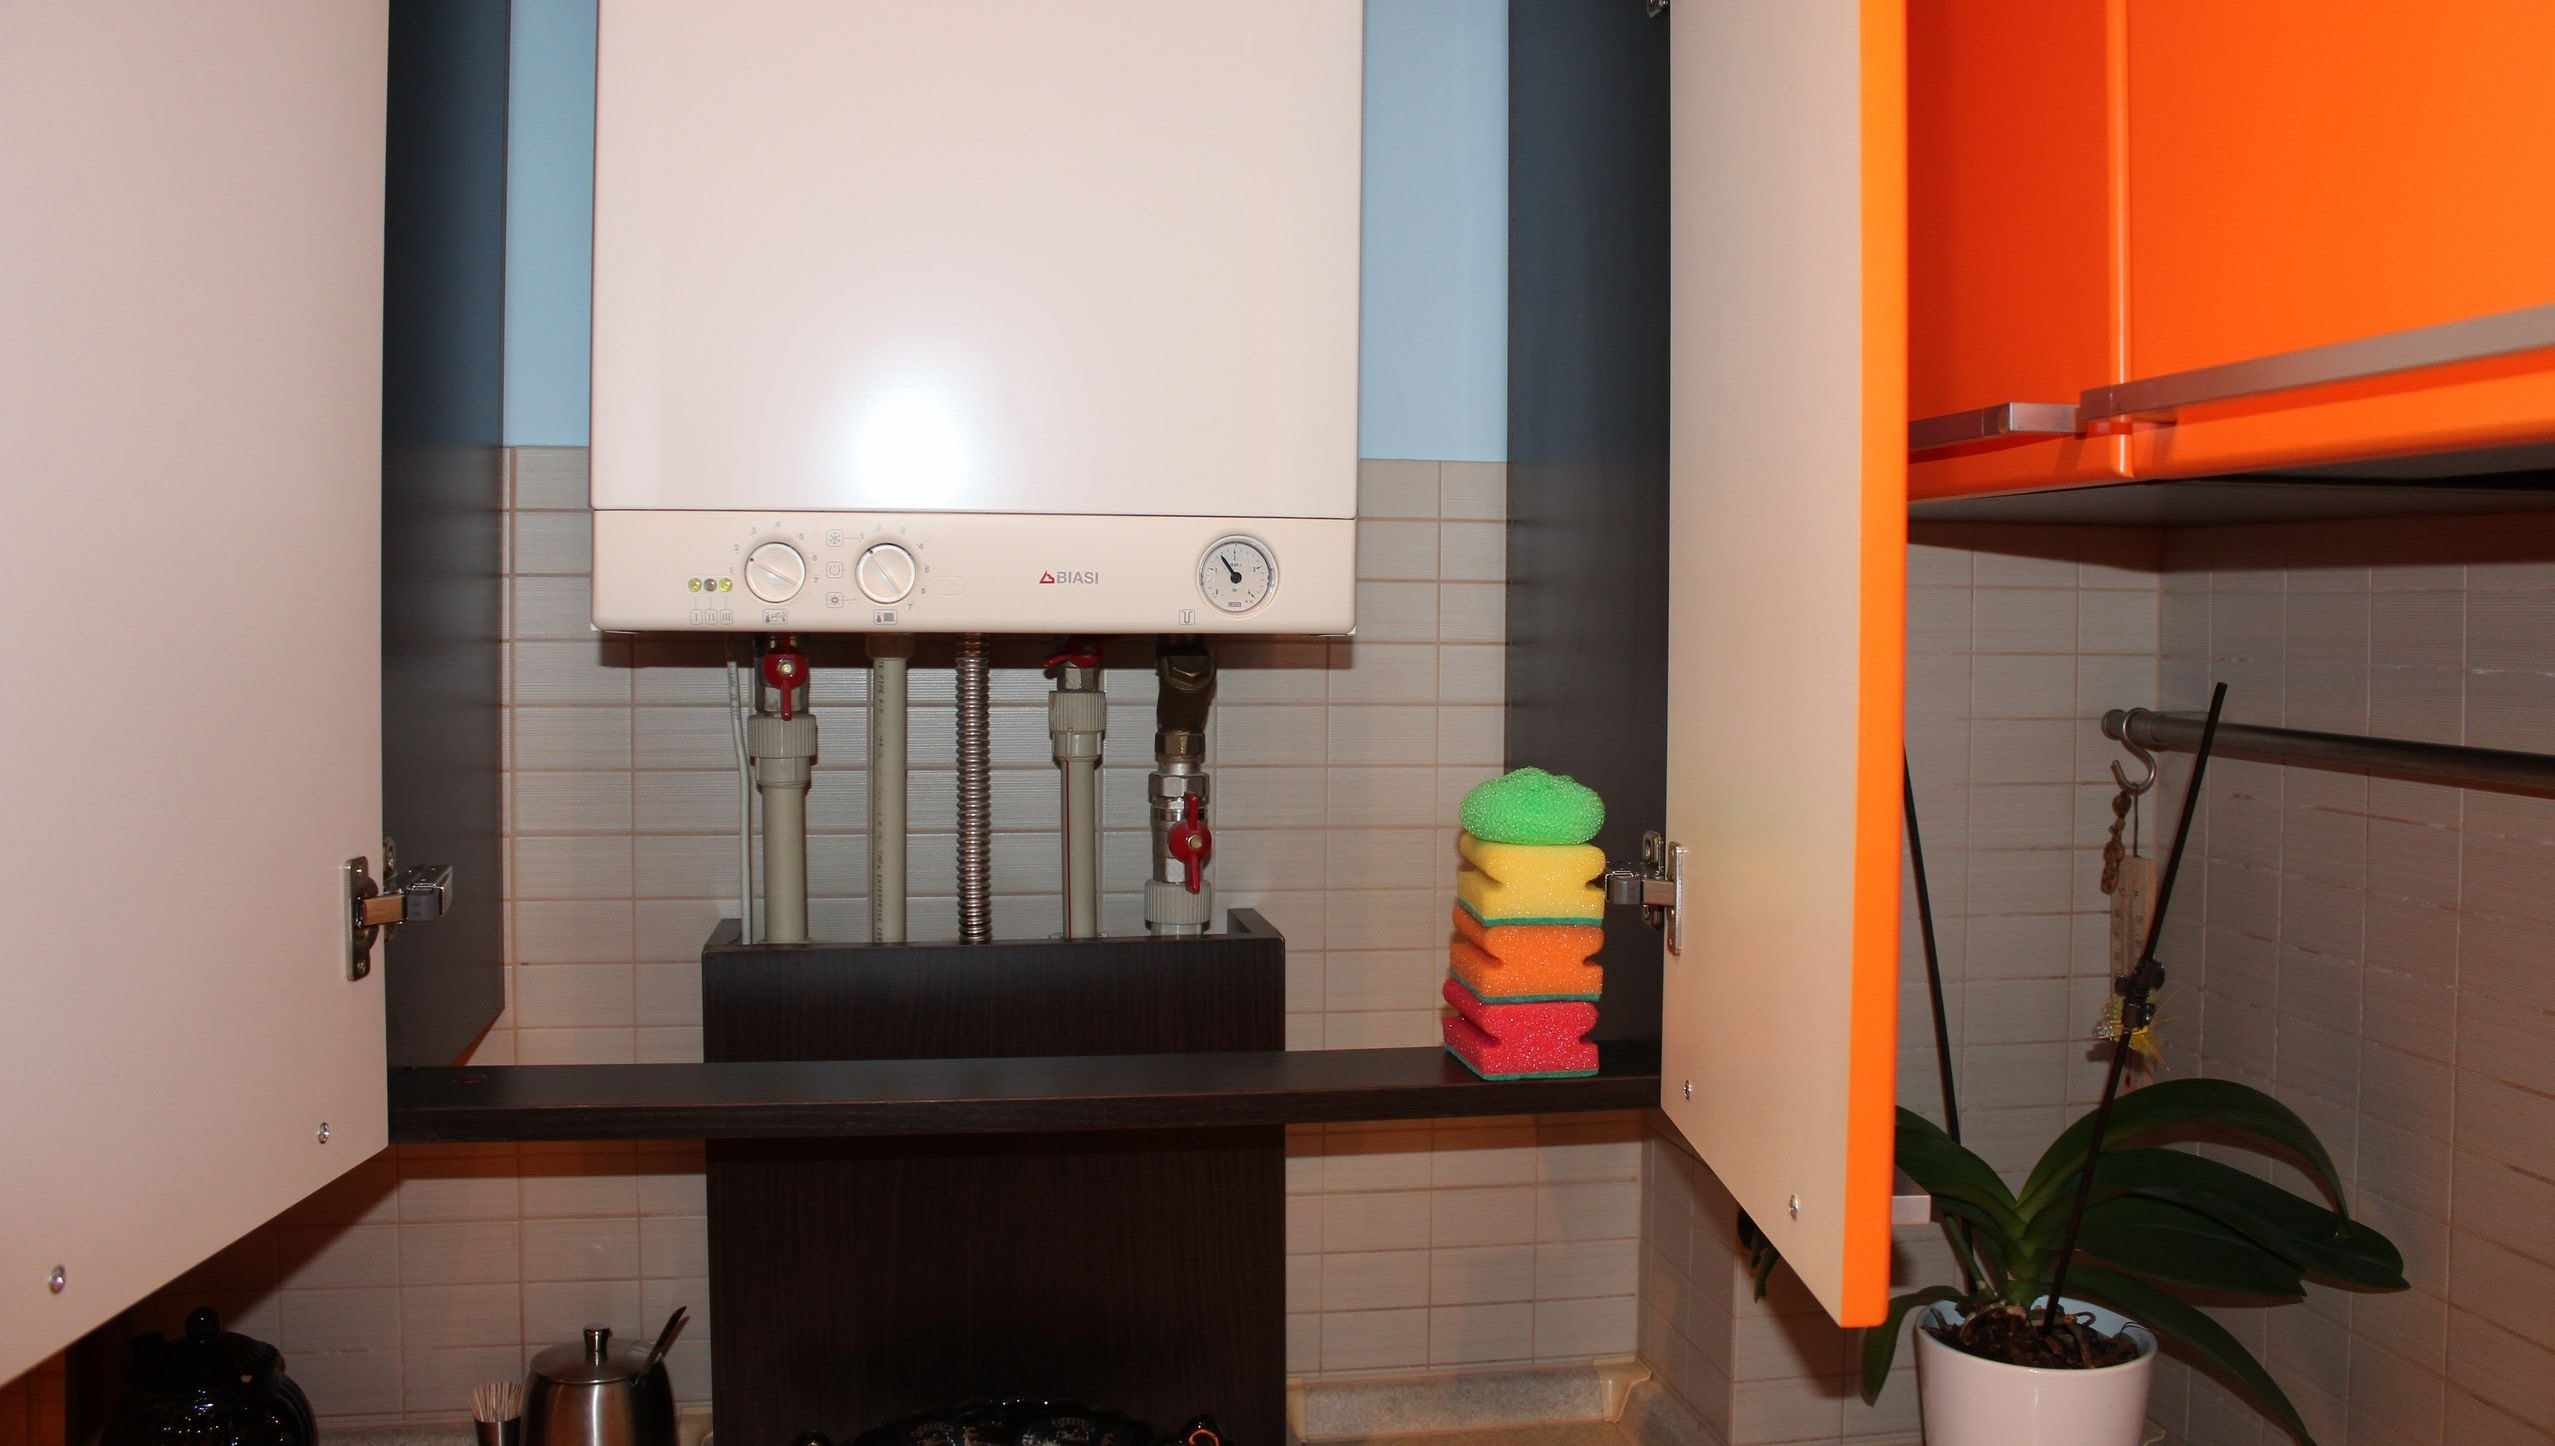 versjon av den uvanlige innredningen på kjøkkenet med en gasskjele